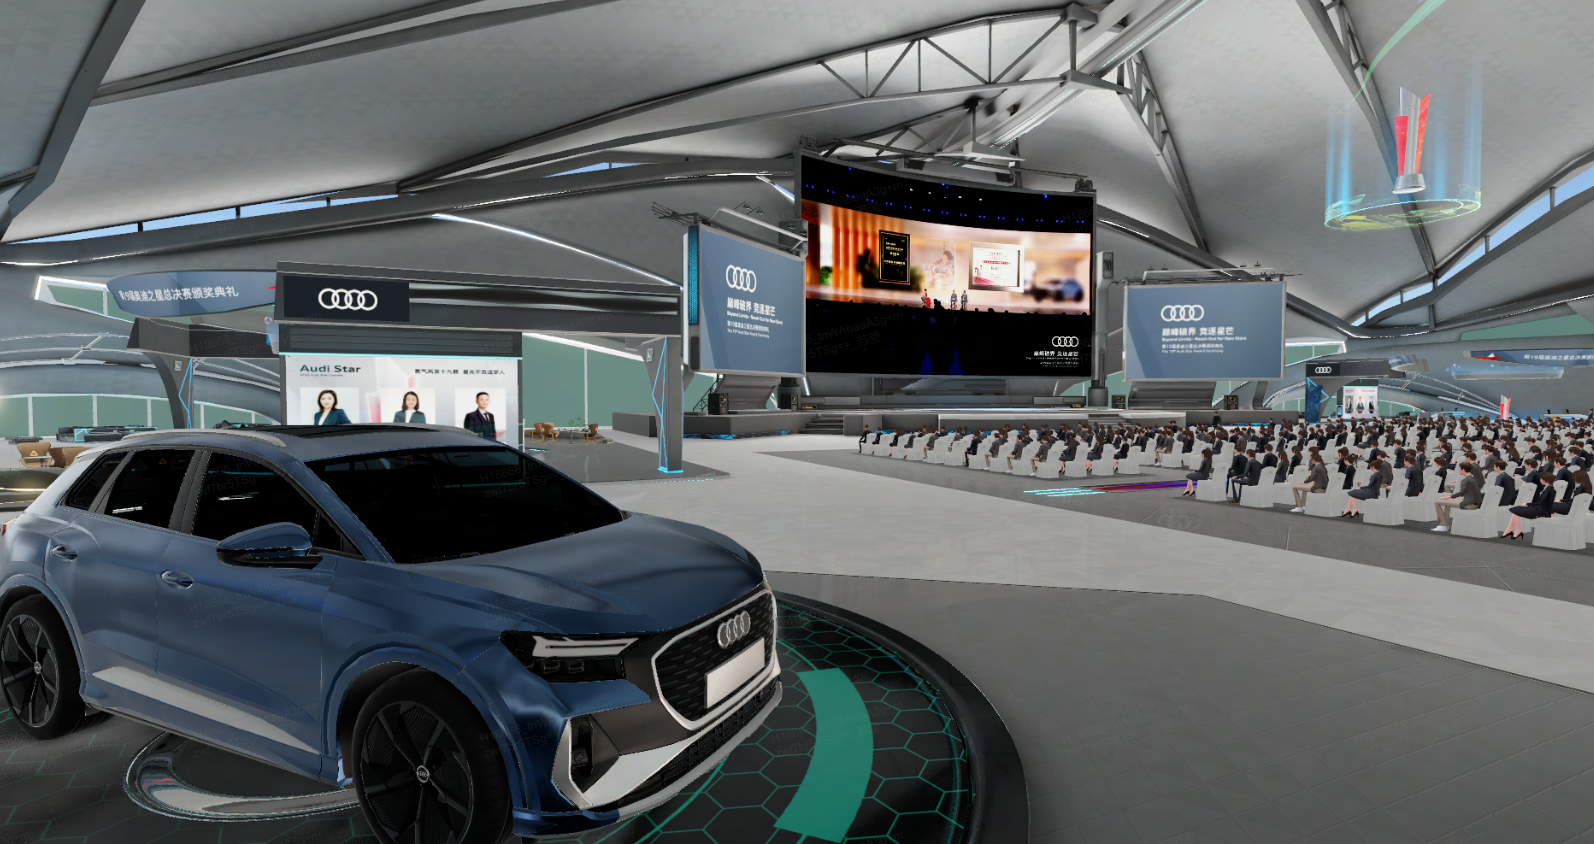 图片展示了一场室内活动，前方有一辆蓝色奥迪汽车，背景是大屏幕和观众席，场地现代化，布置有奥迪品牌标识。